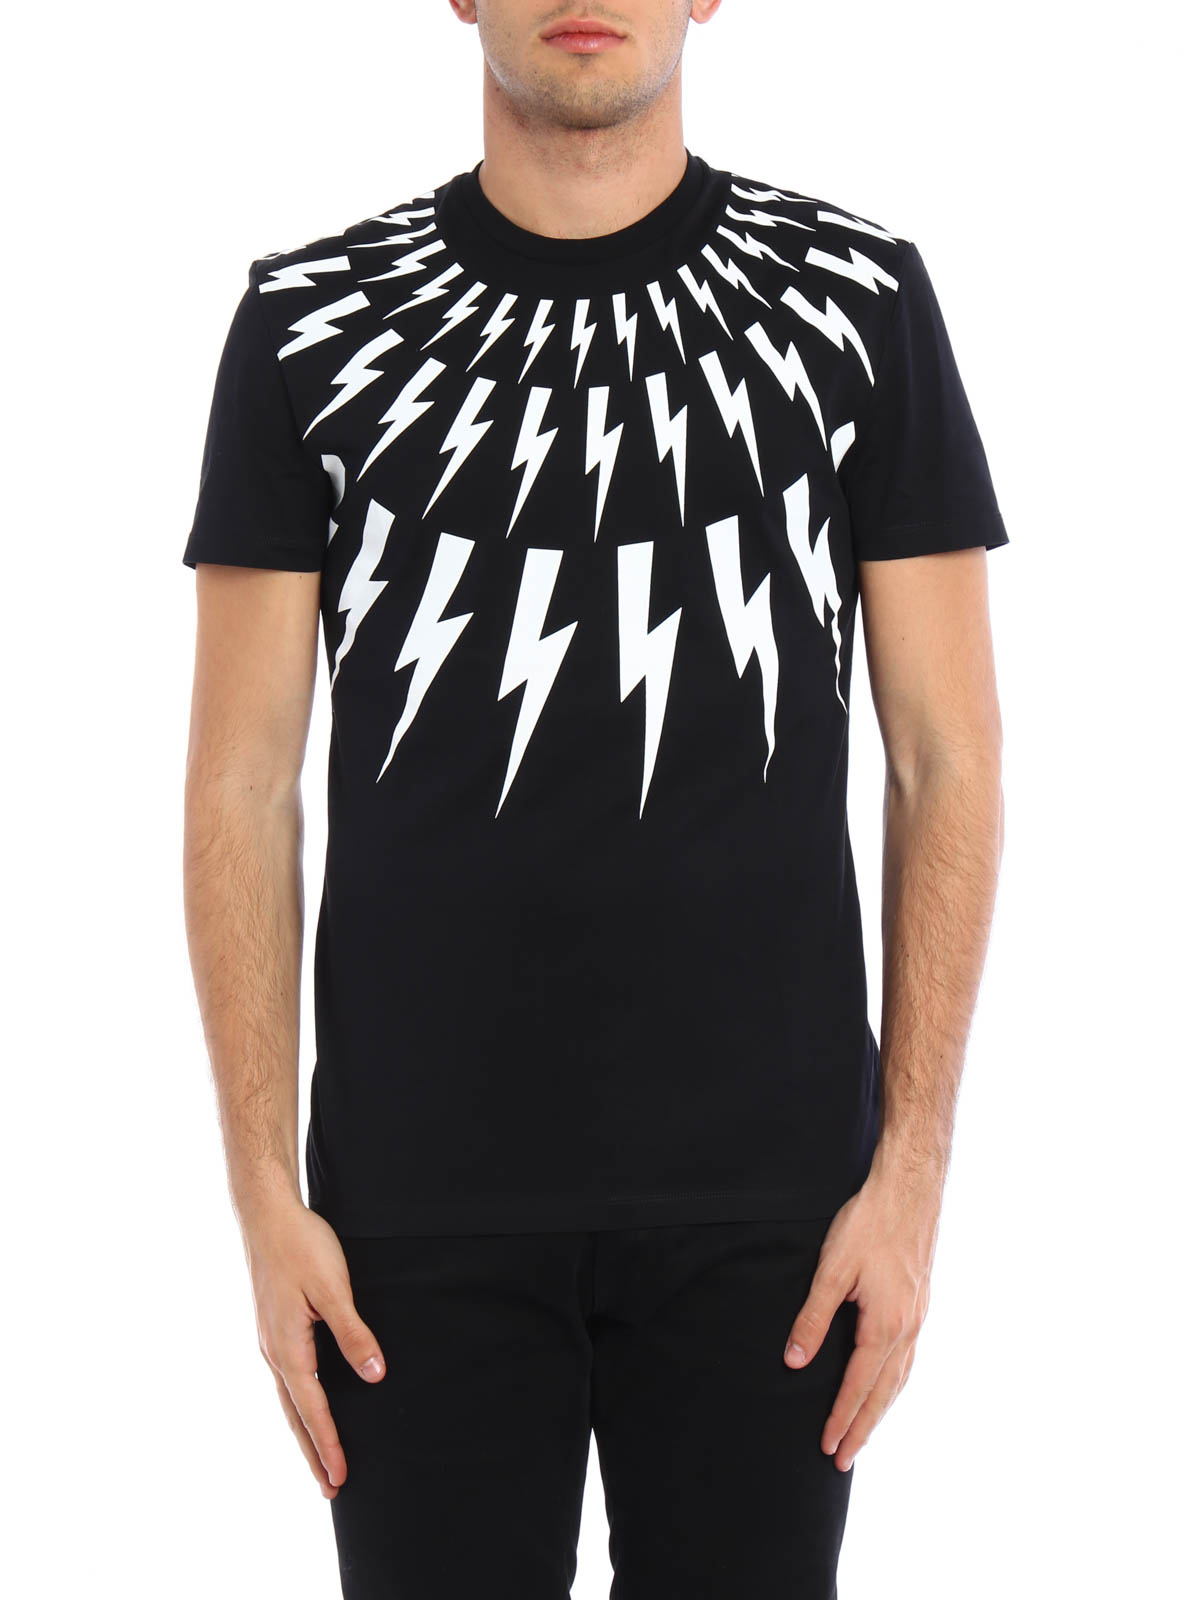 Neil Barrett Online T Shirts Thunderbolt Print T Shirt 00000085833f00s012 